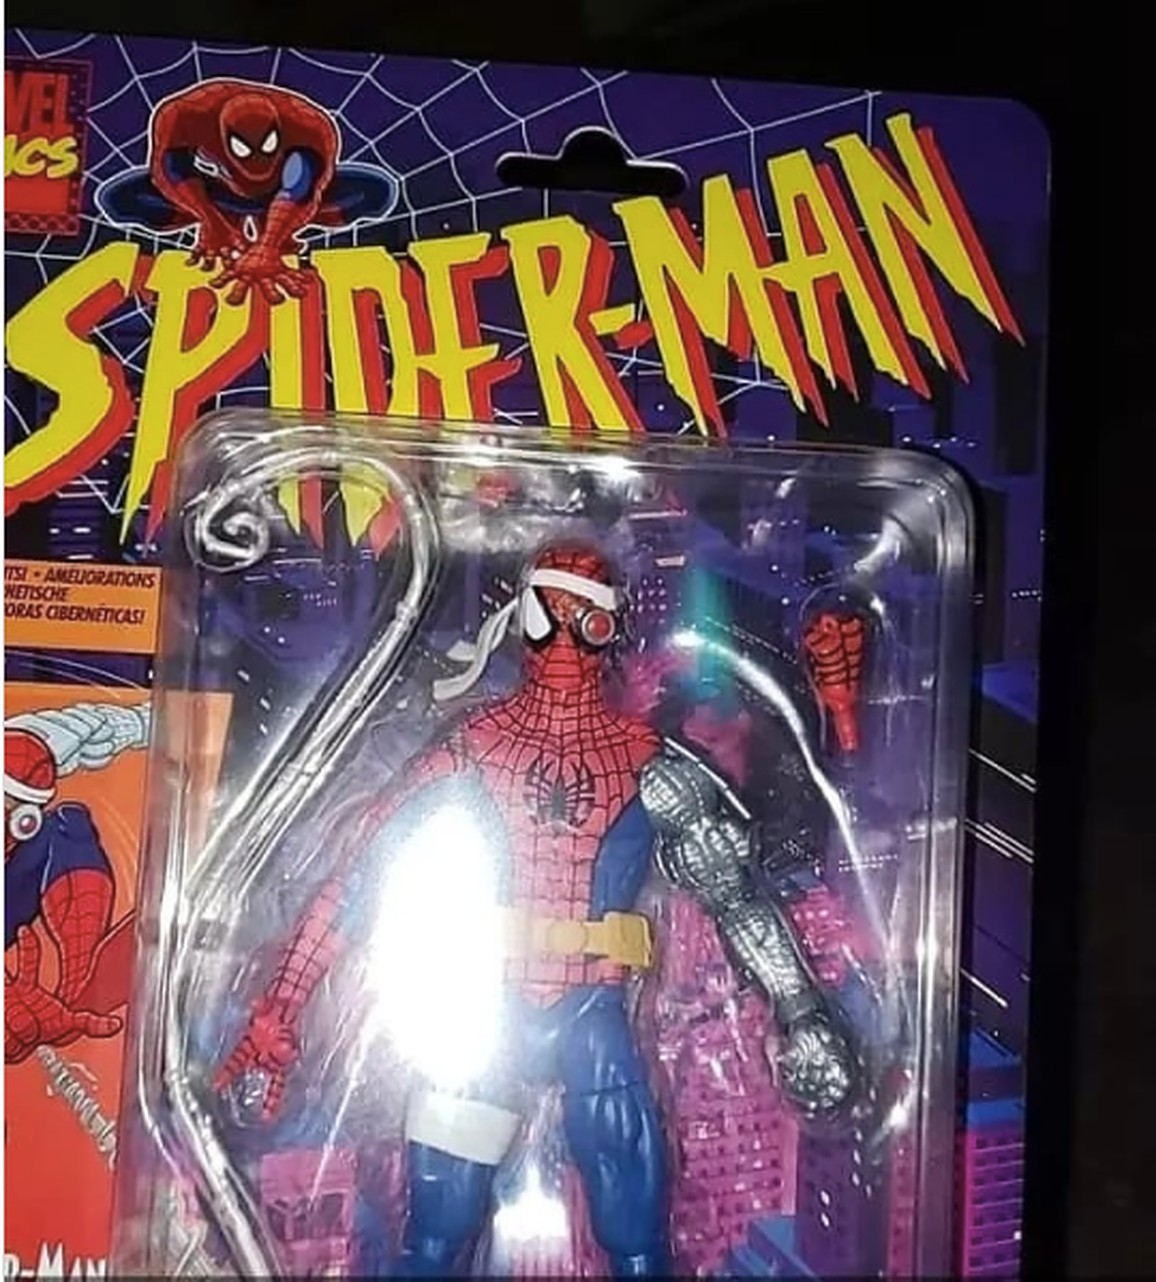 Marvel Legends Retro Spider-Man Cyborg Spider-Man NEW